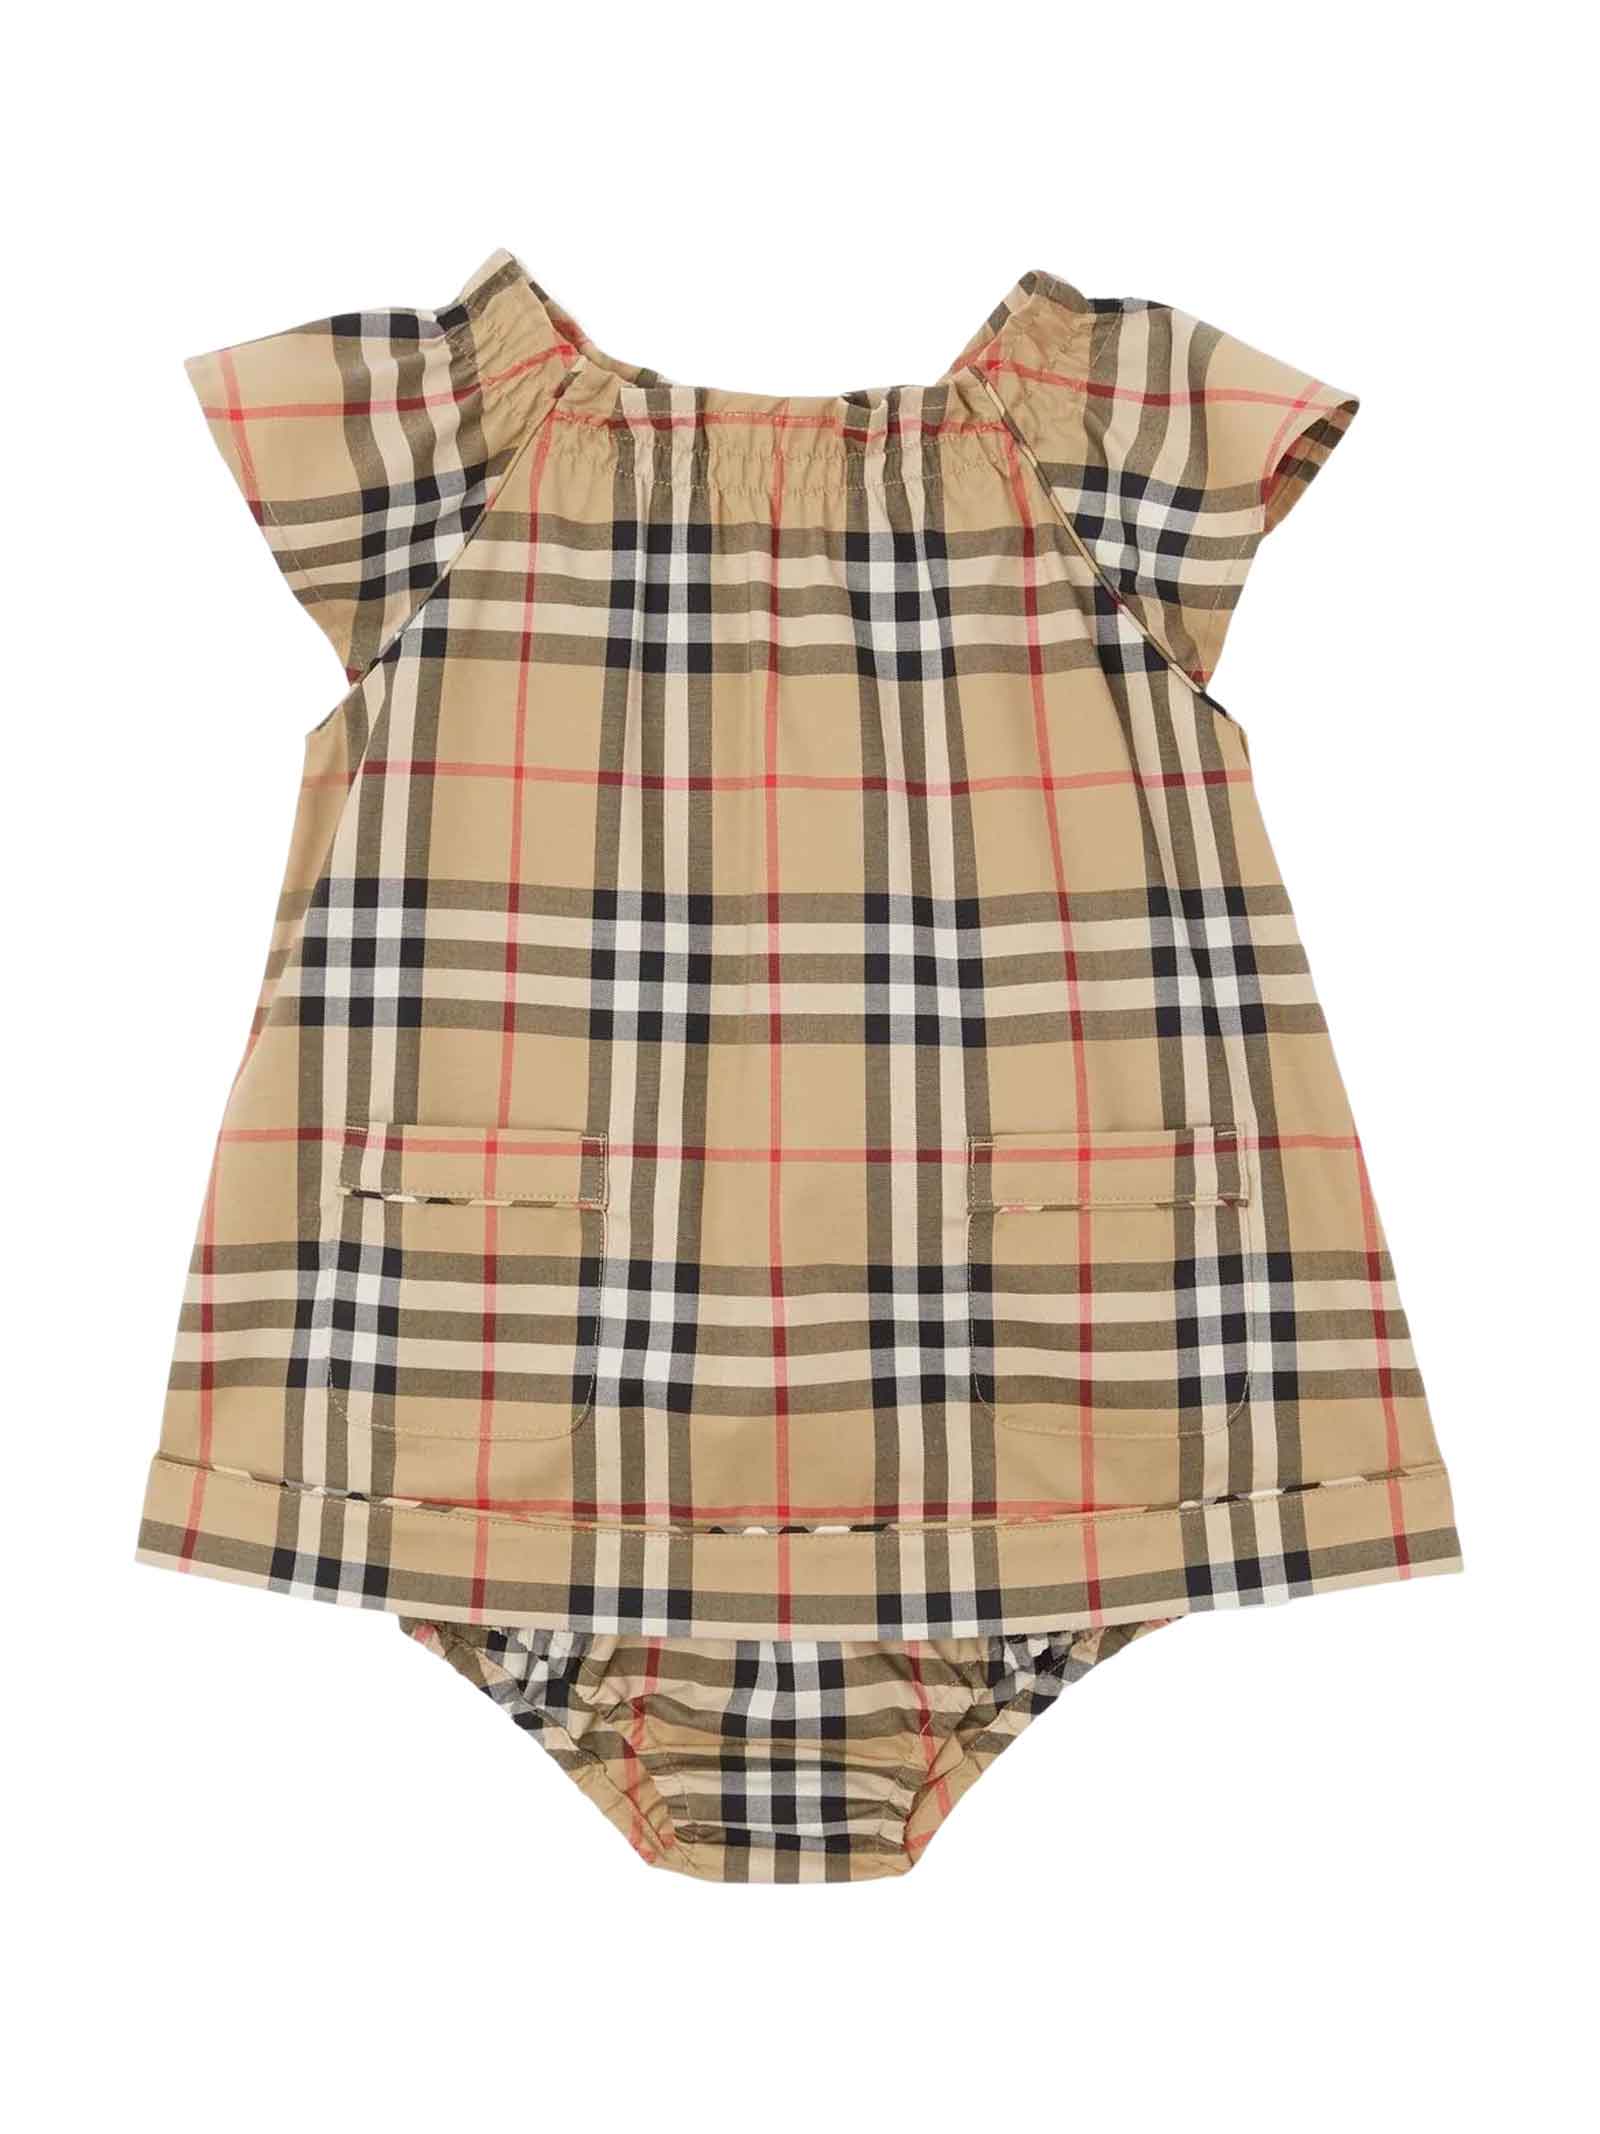 Burberry Beige Dress Baby Girl